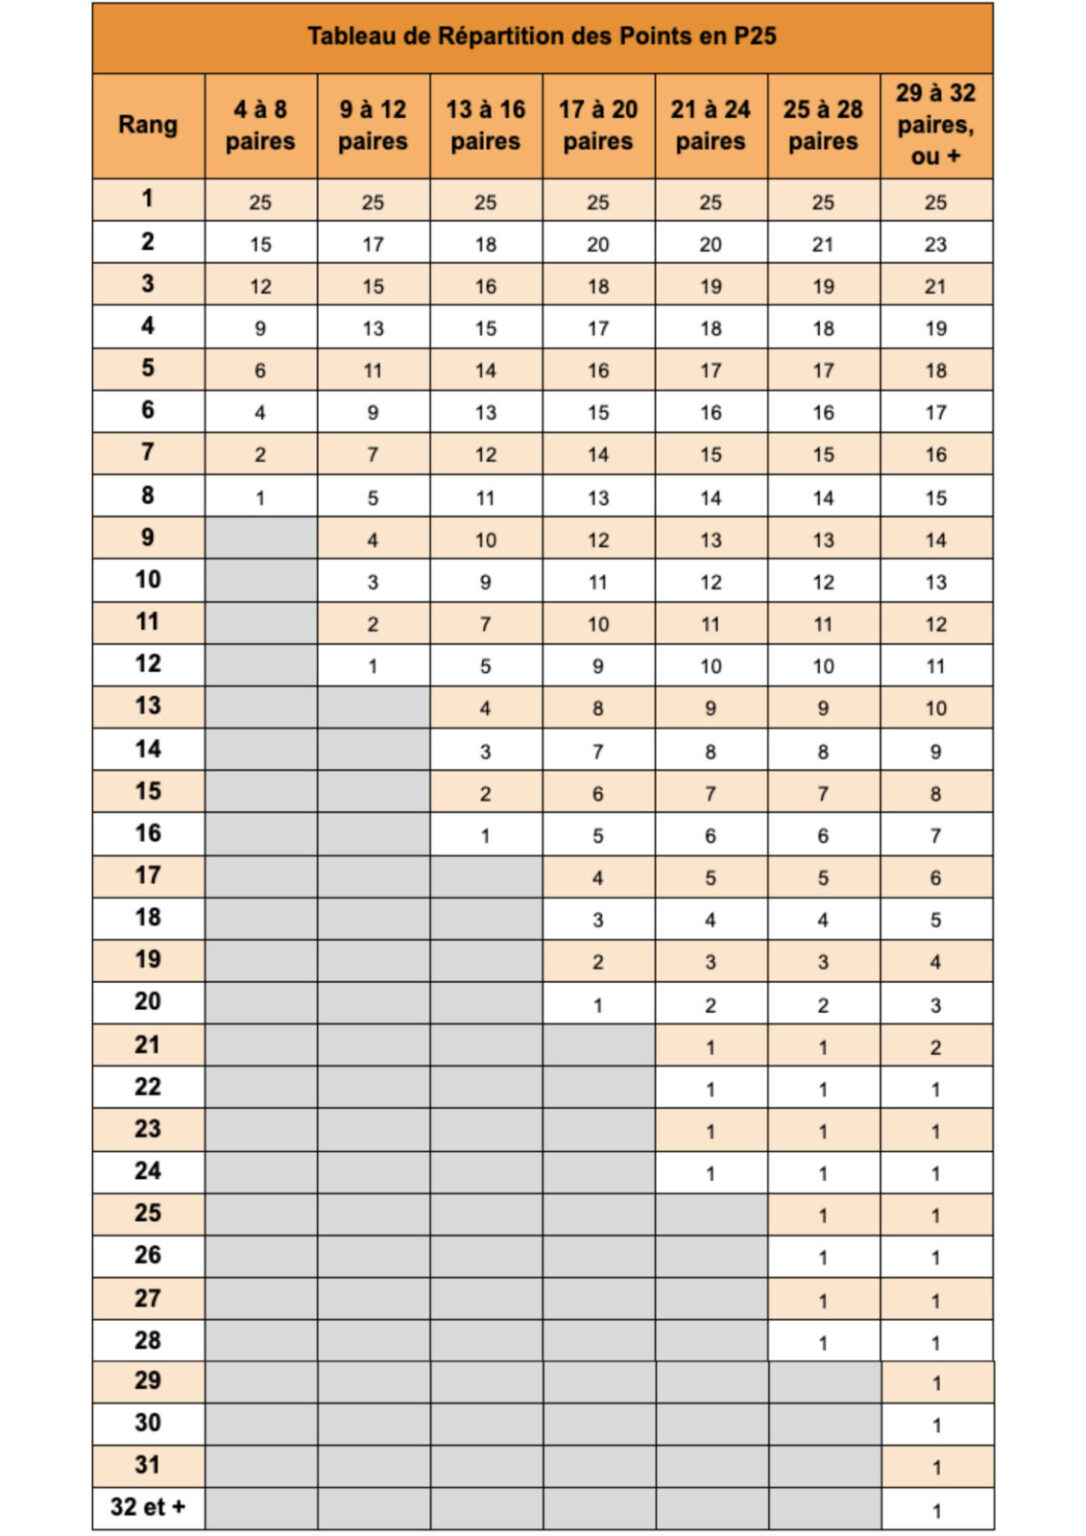 tournois de padel répartition des points en p25 padel reference